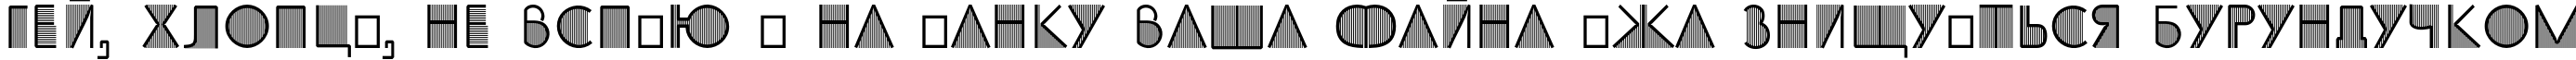 Пример написания шрифтом SS_Adec2.0_initials текста на украинском